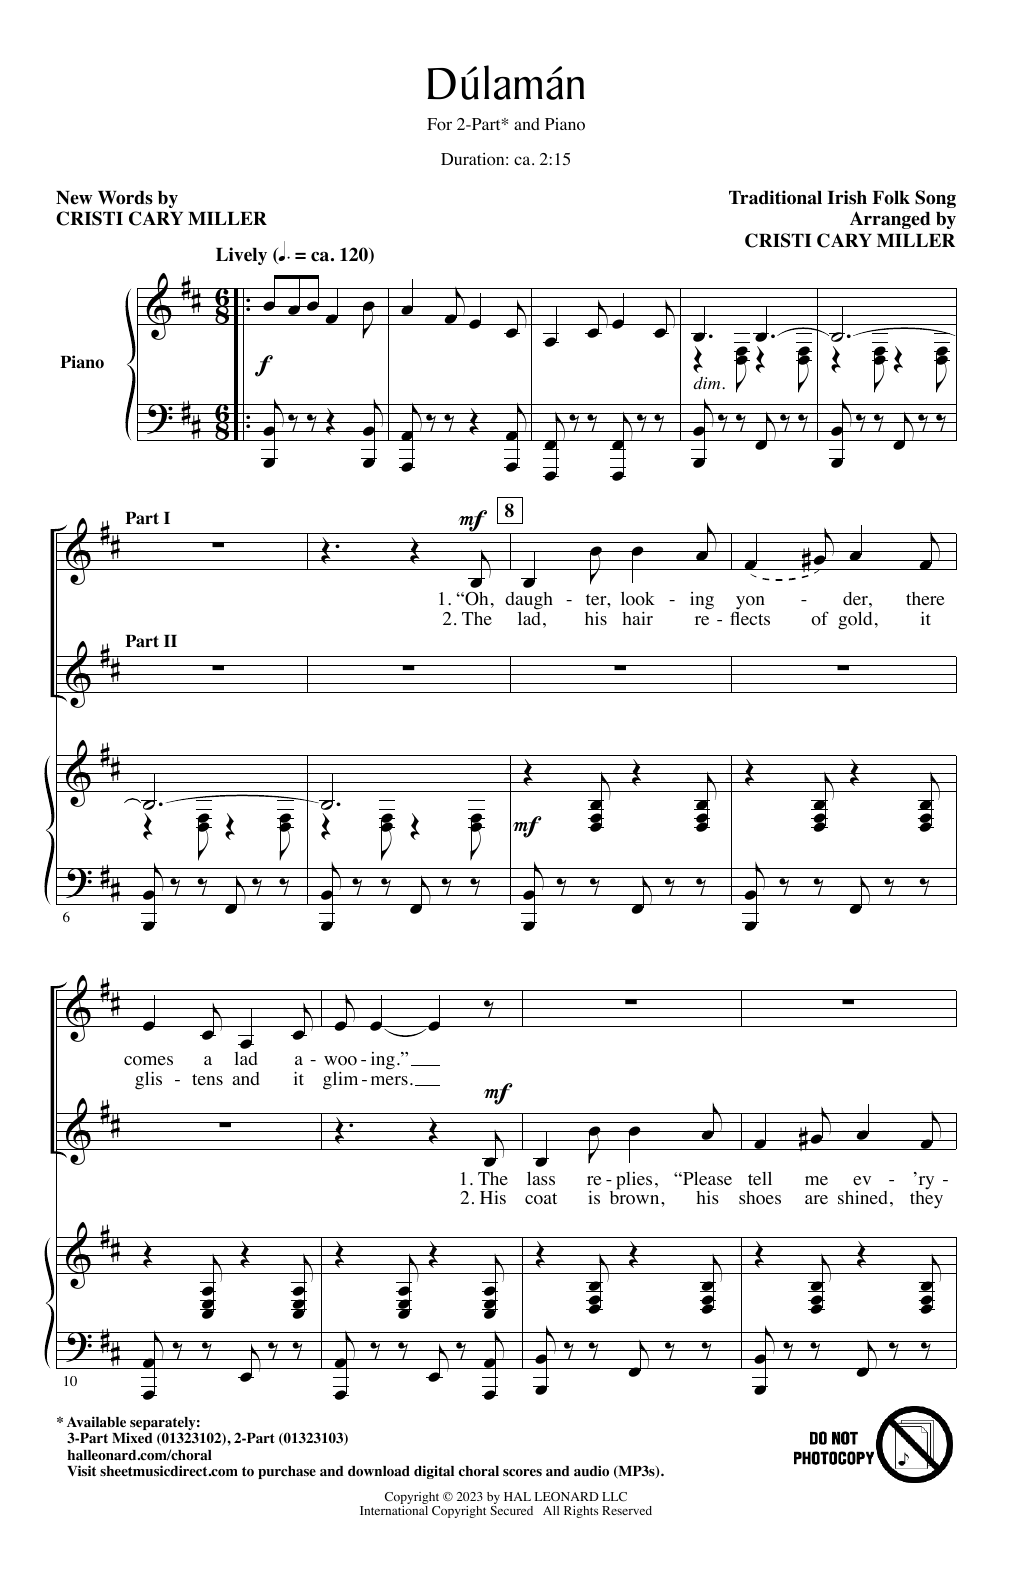 Irish Folk Song Dúlamán (arr. Cristi Cary Miller) sheet music notes and chords arranged for 2-Part Choir